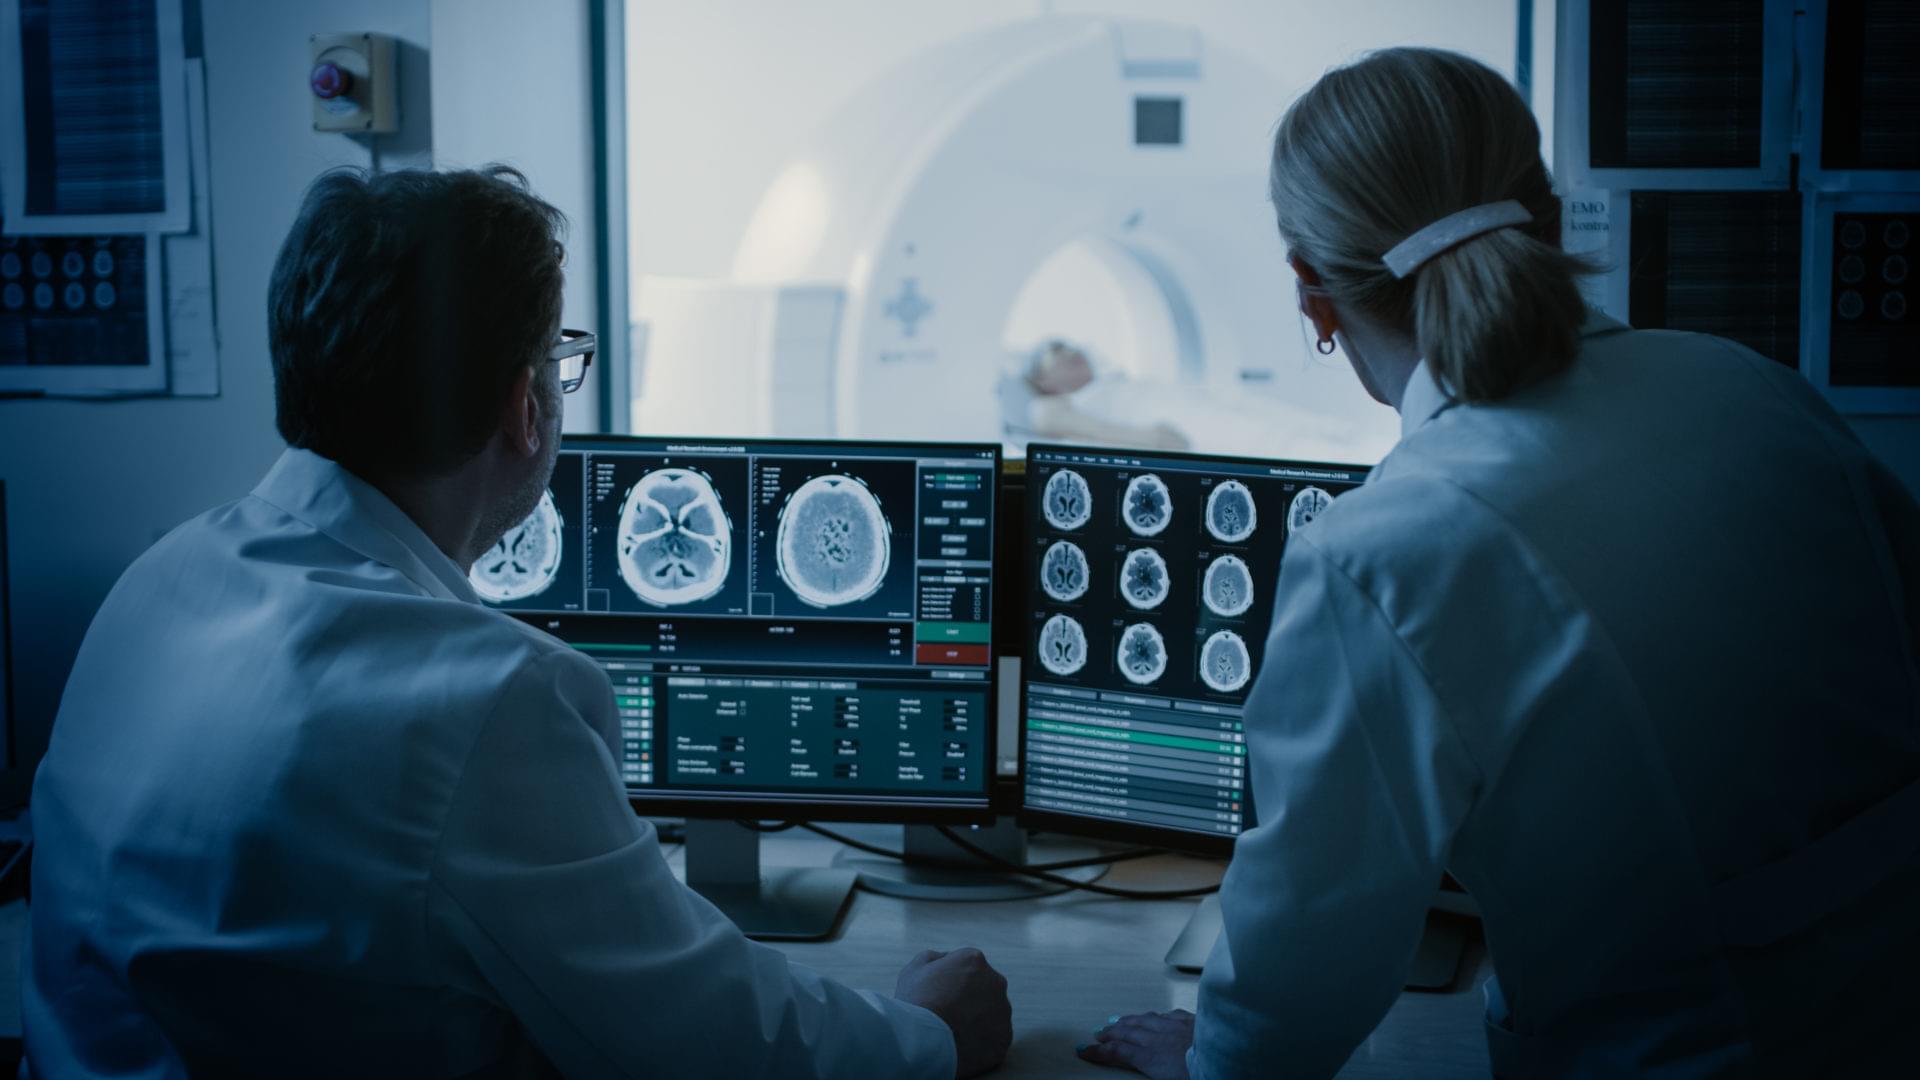 Im Kontrollraum besprechen Arzt und Radiologe die Diagnose, während sie die Prozedur beobachten und die Ergebnisse der Hirnscans überwachen. Im Hintergrund unterzieht sich der Patient einem MRT- oder CT-Scan-Verfahren.